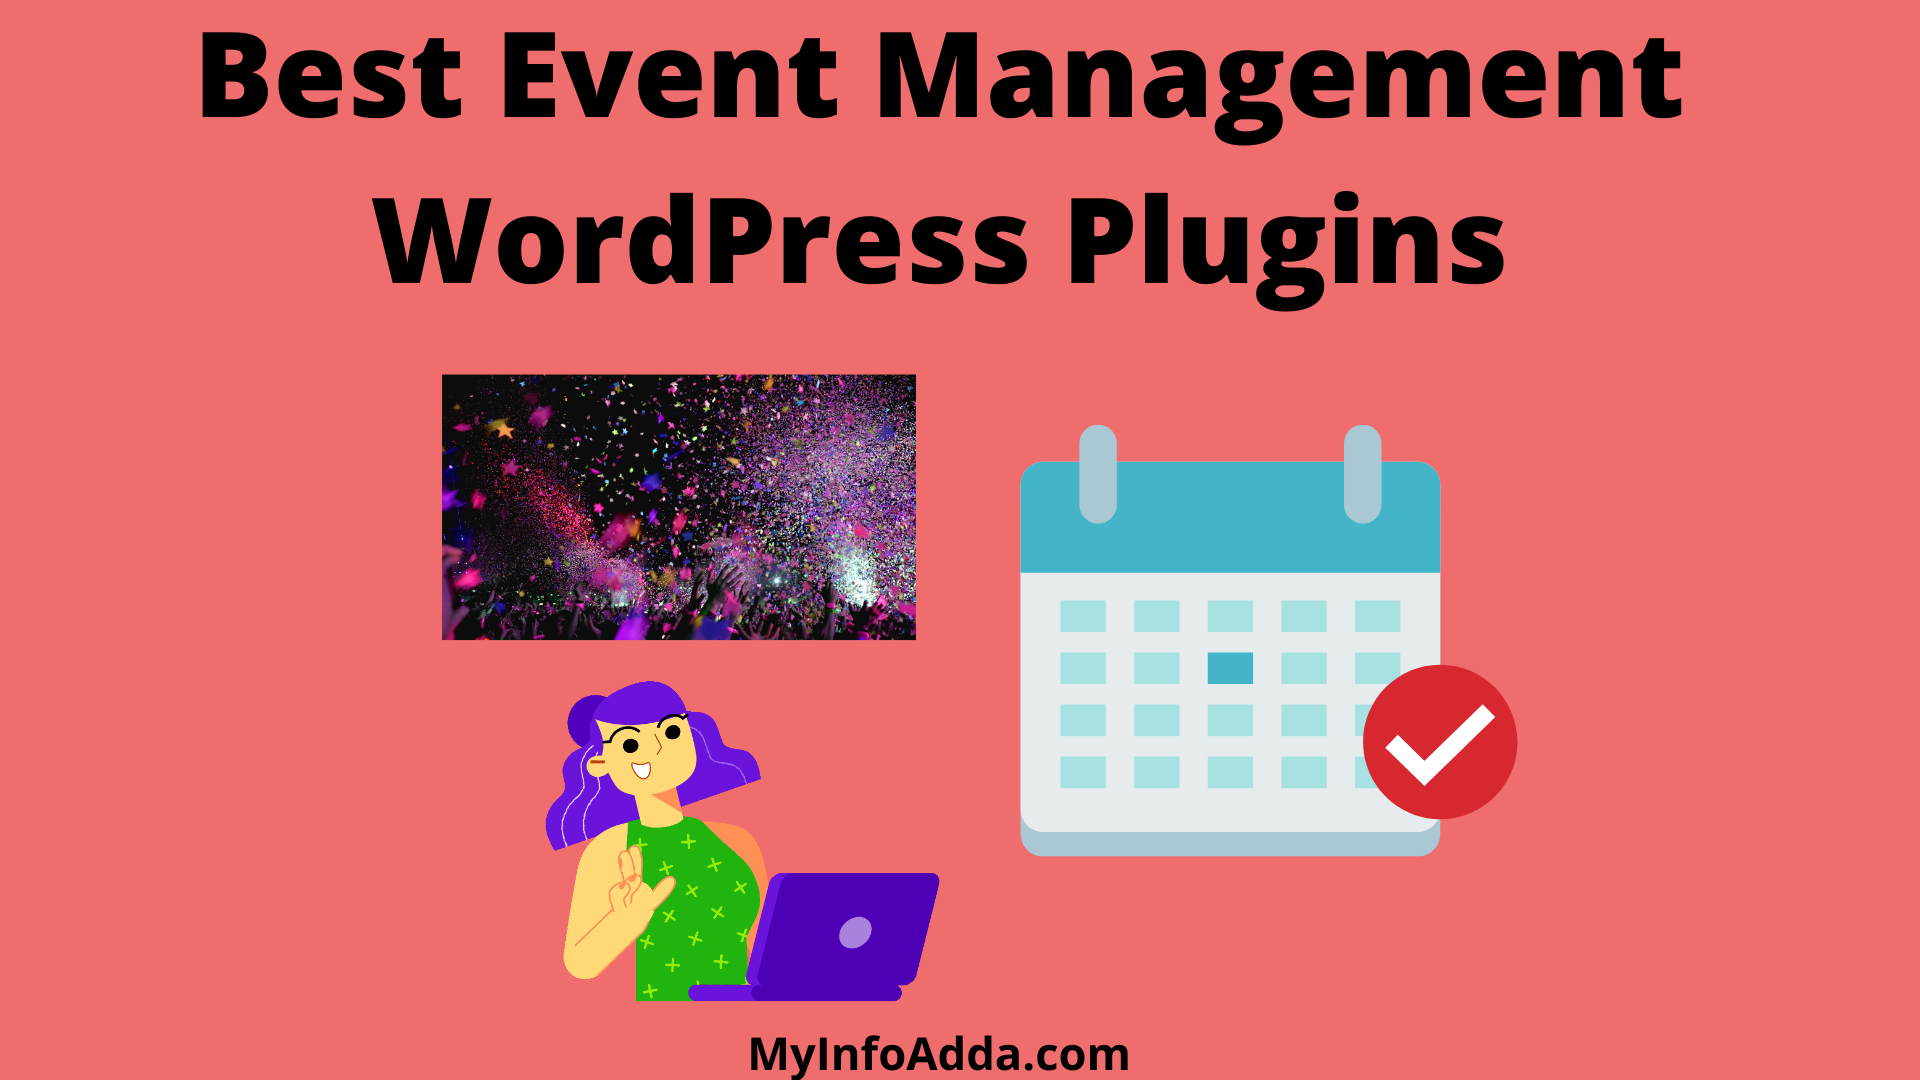 Best Event Management WordPress Plugins